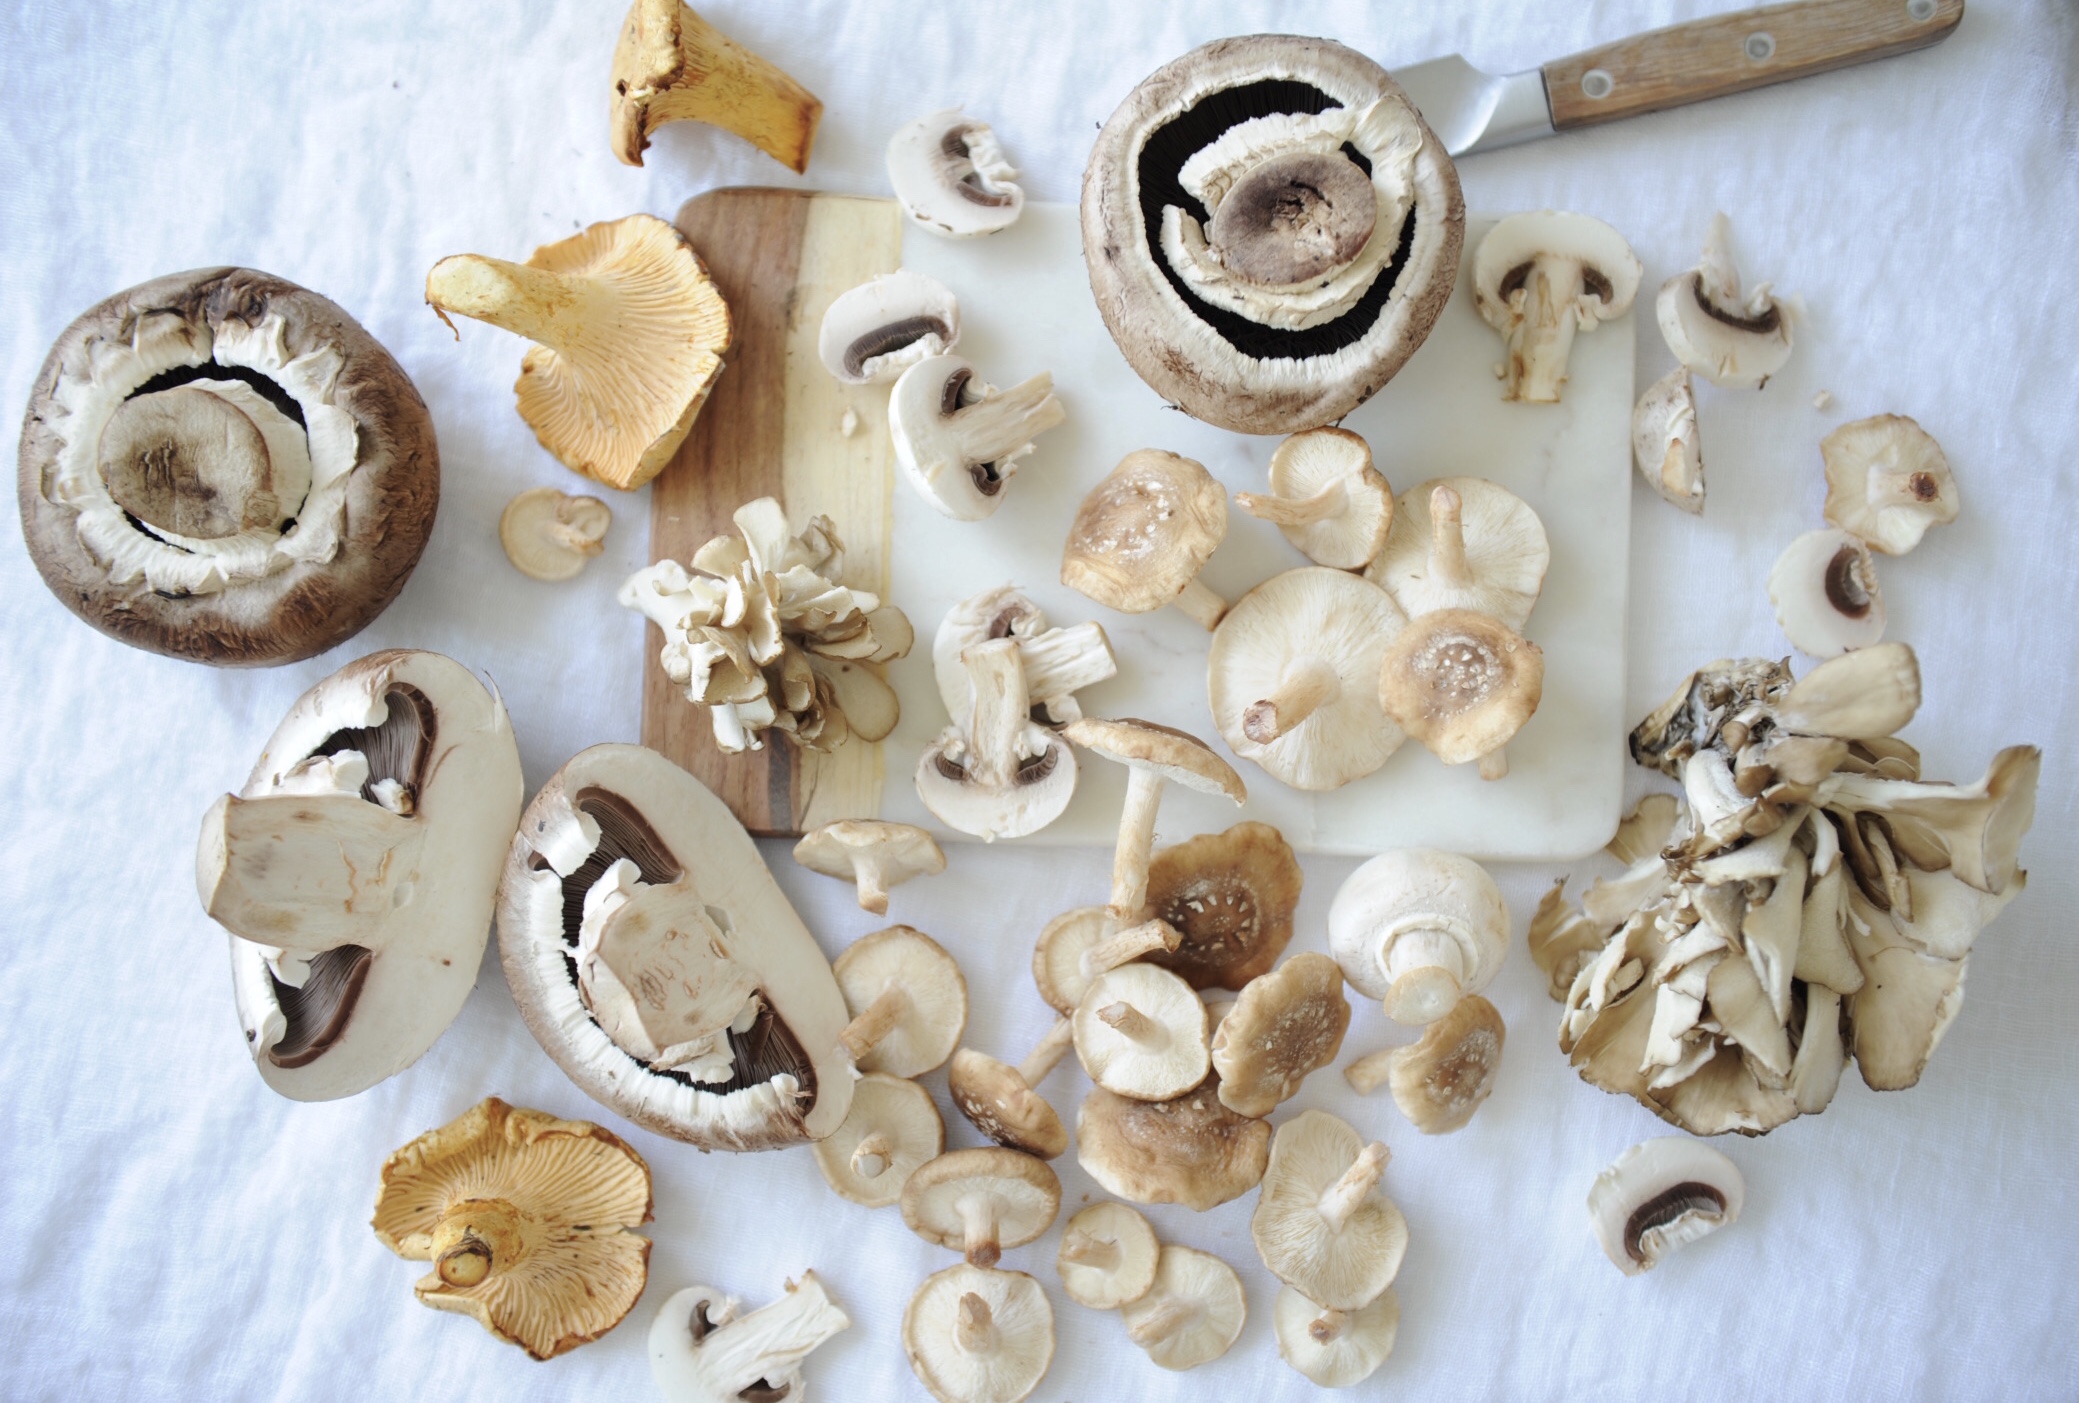 Shiitake Mushrooms  Mushroom Varieties 101